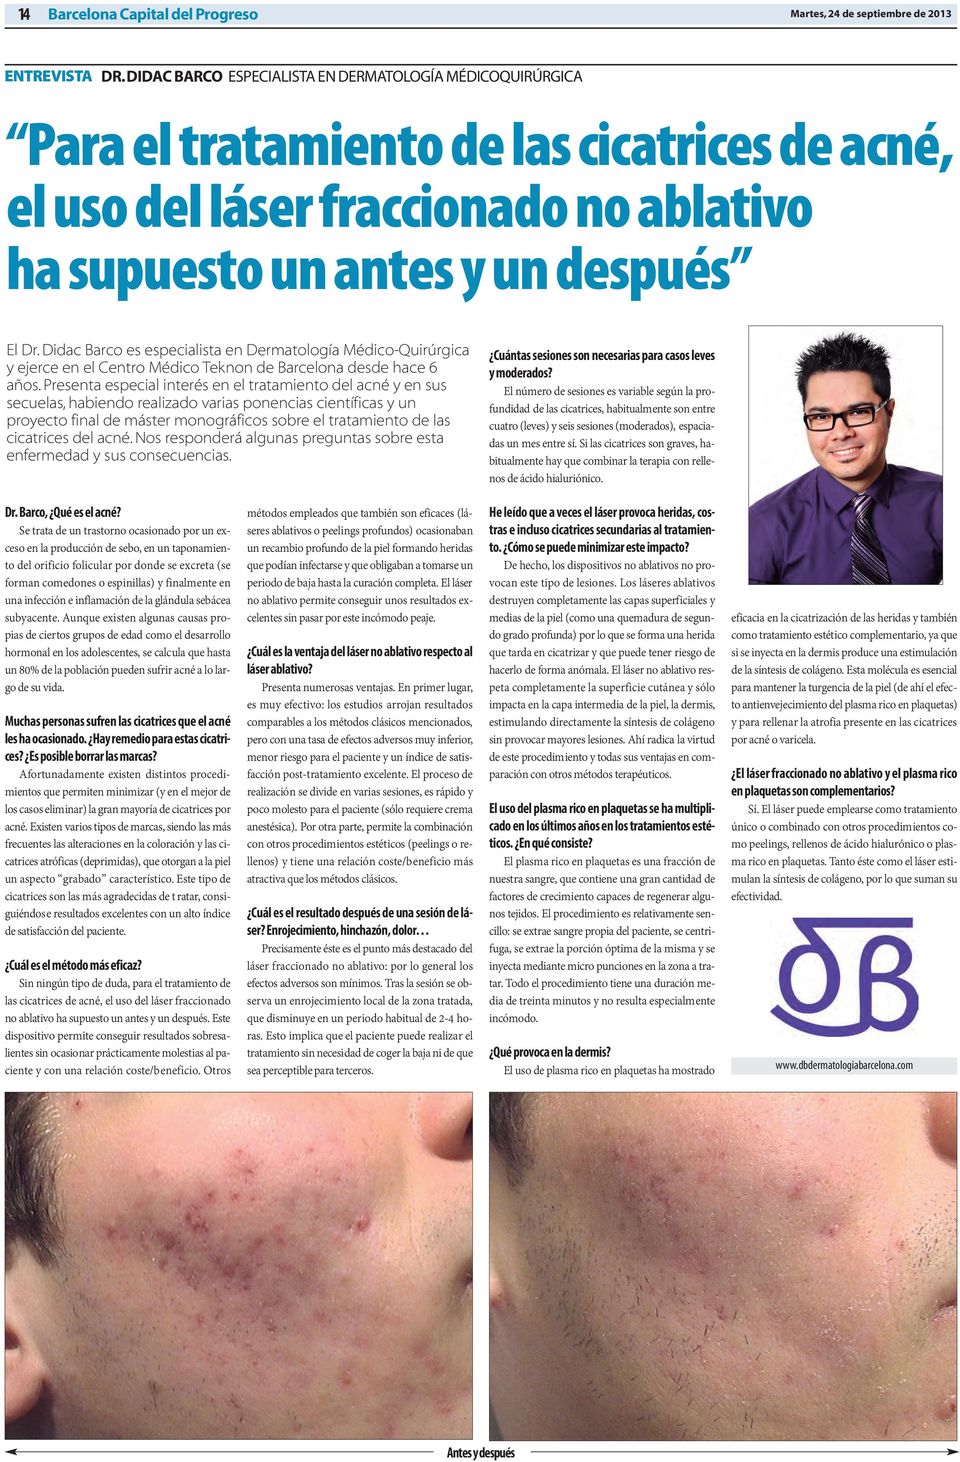 Didac Barco es especialista en Dermatología Médico-Quirúrgica y ejerce en el Centro Médico Teknon de Barcelona desde hace 6 años.